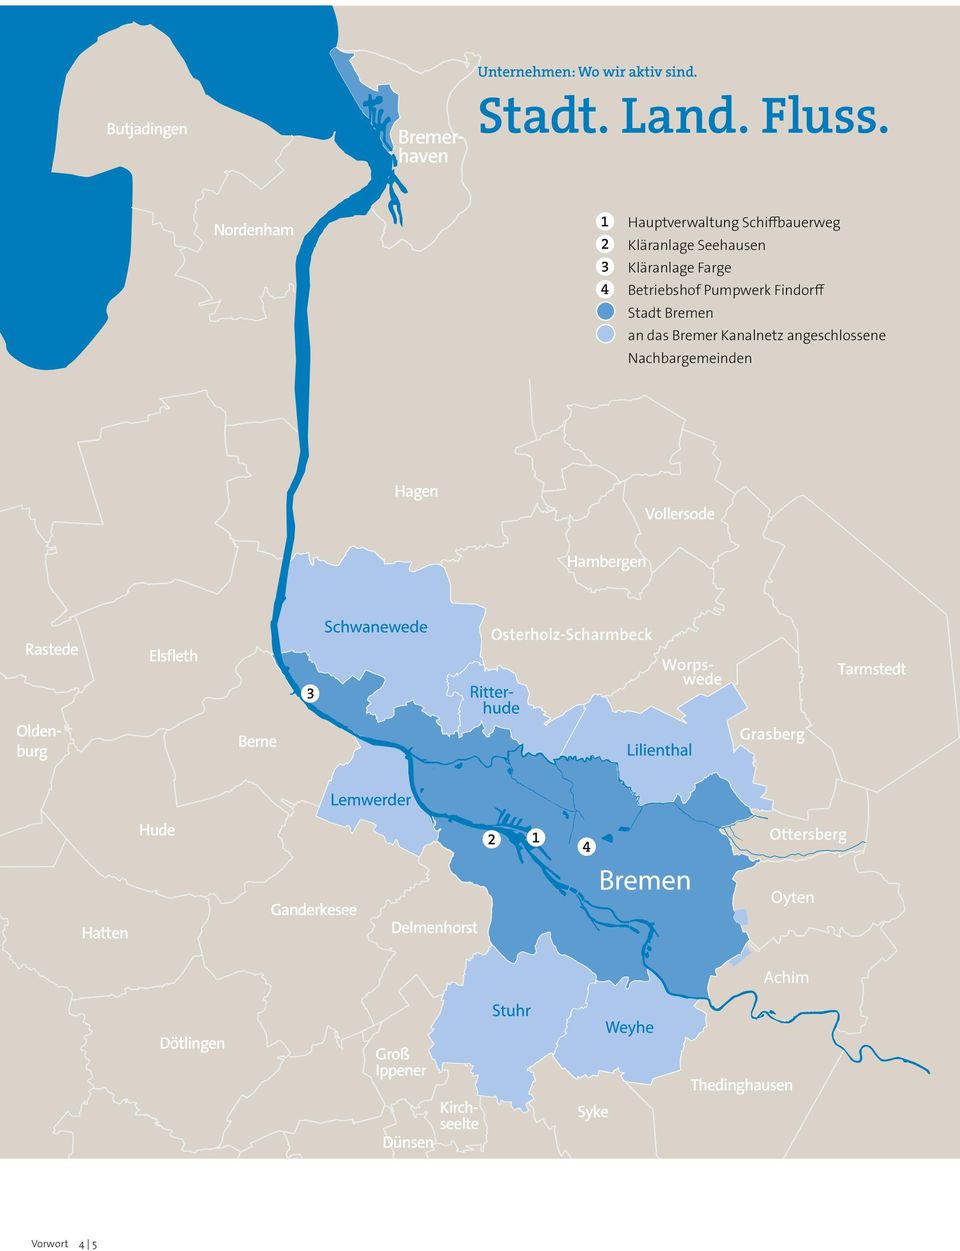 Bremen an das Bremer Kanalnetz angeschlossene Nachbargemeinden Hagen Vollersode Hambergen Rastede Elsfleth 3